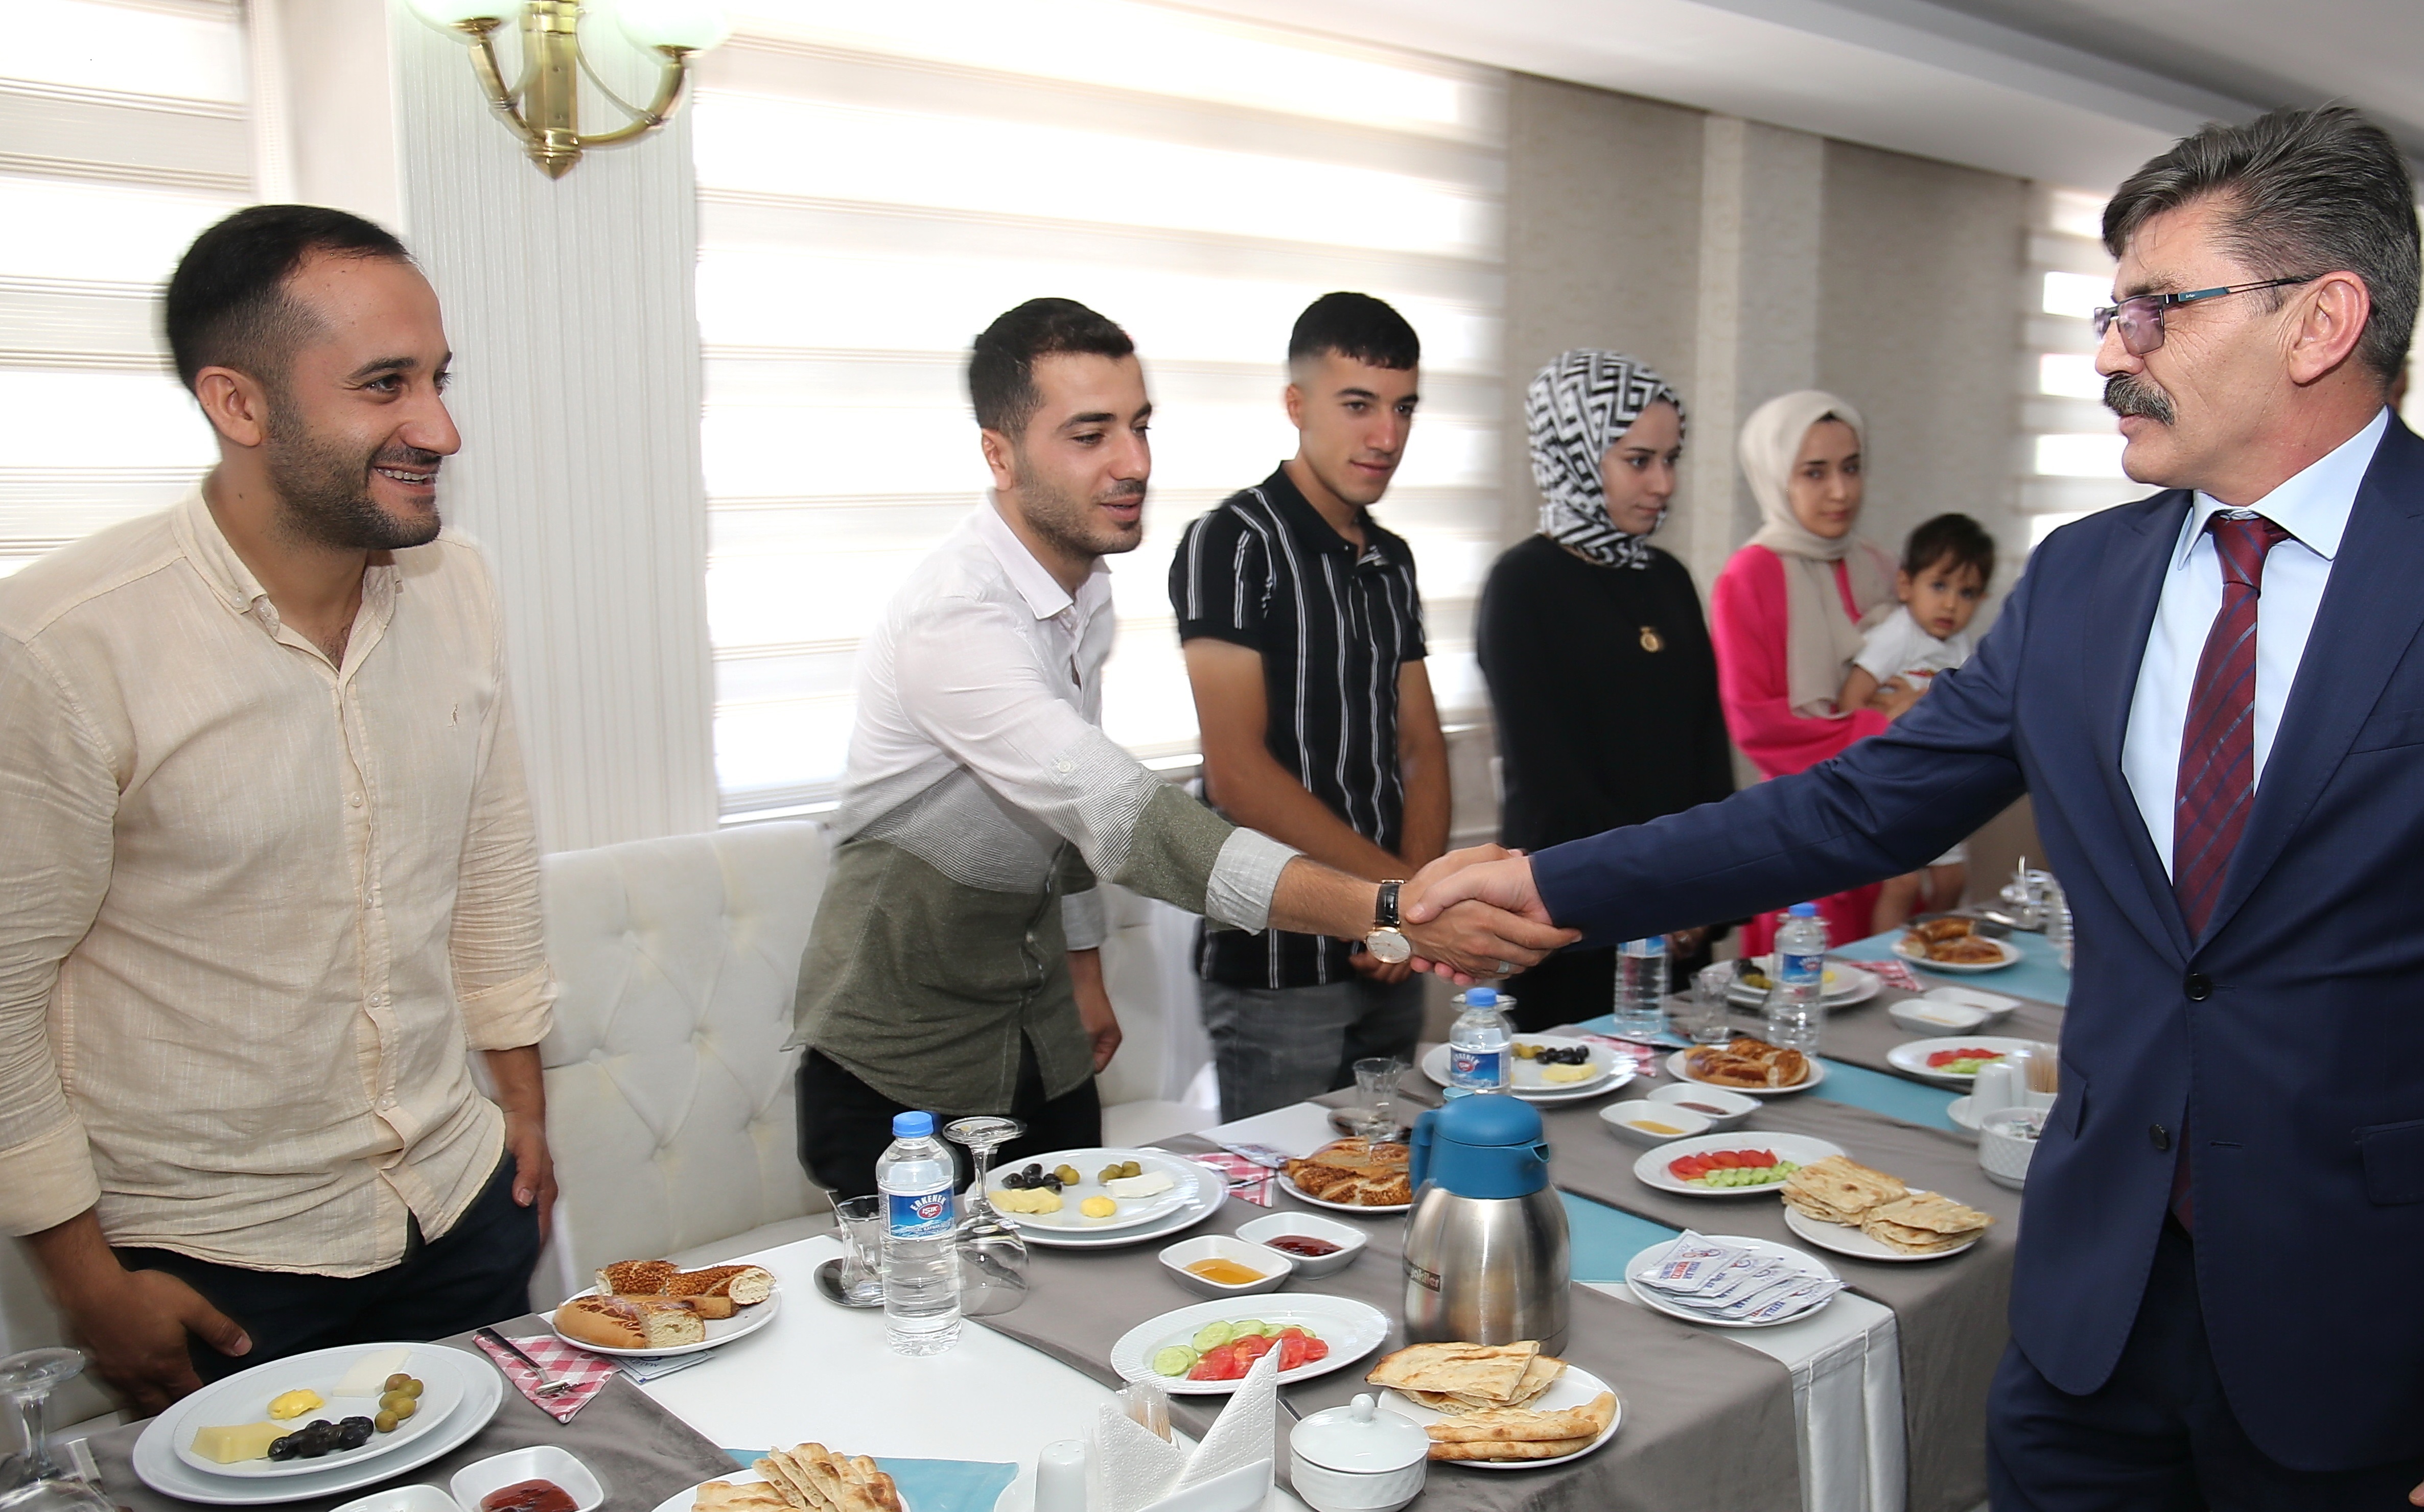 D15 Temmuz Şehit ve Gazi Aileleri Onuruna Polisevinde Kahvaltı Programı Düzenlendi. Bir w